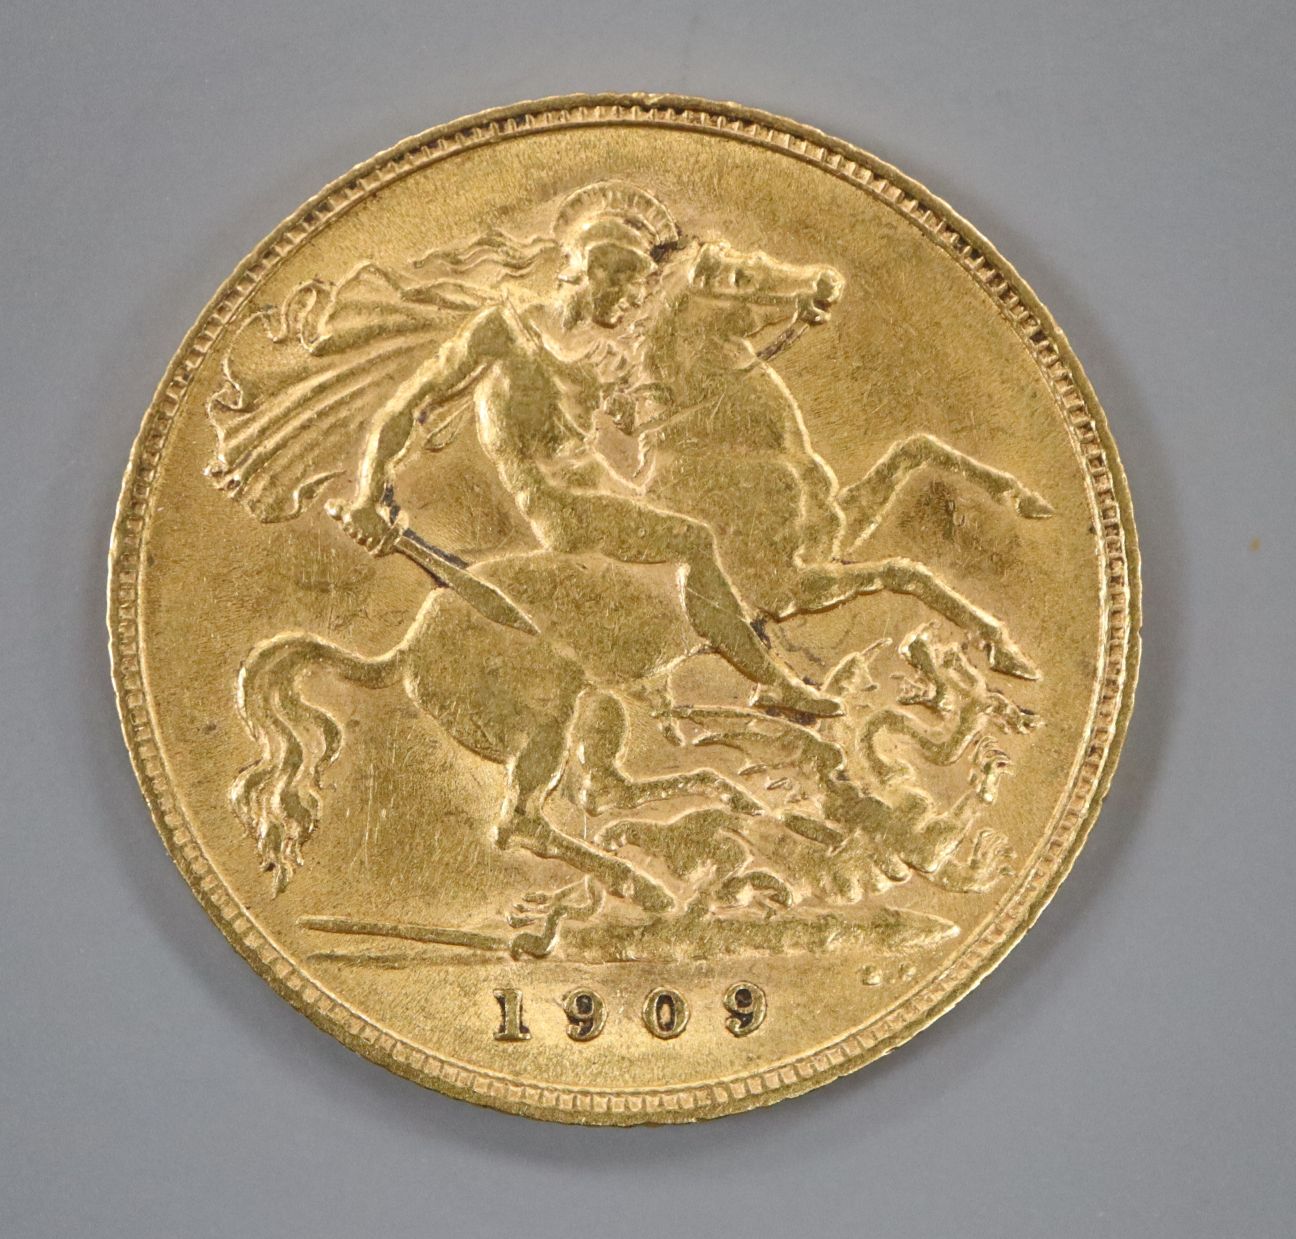 A 1909 gold half sovereign